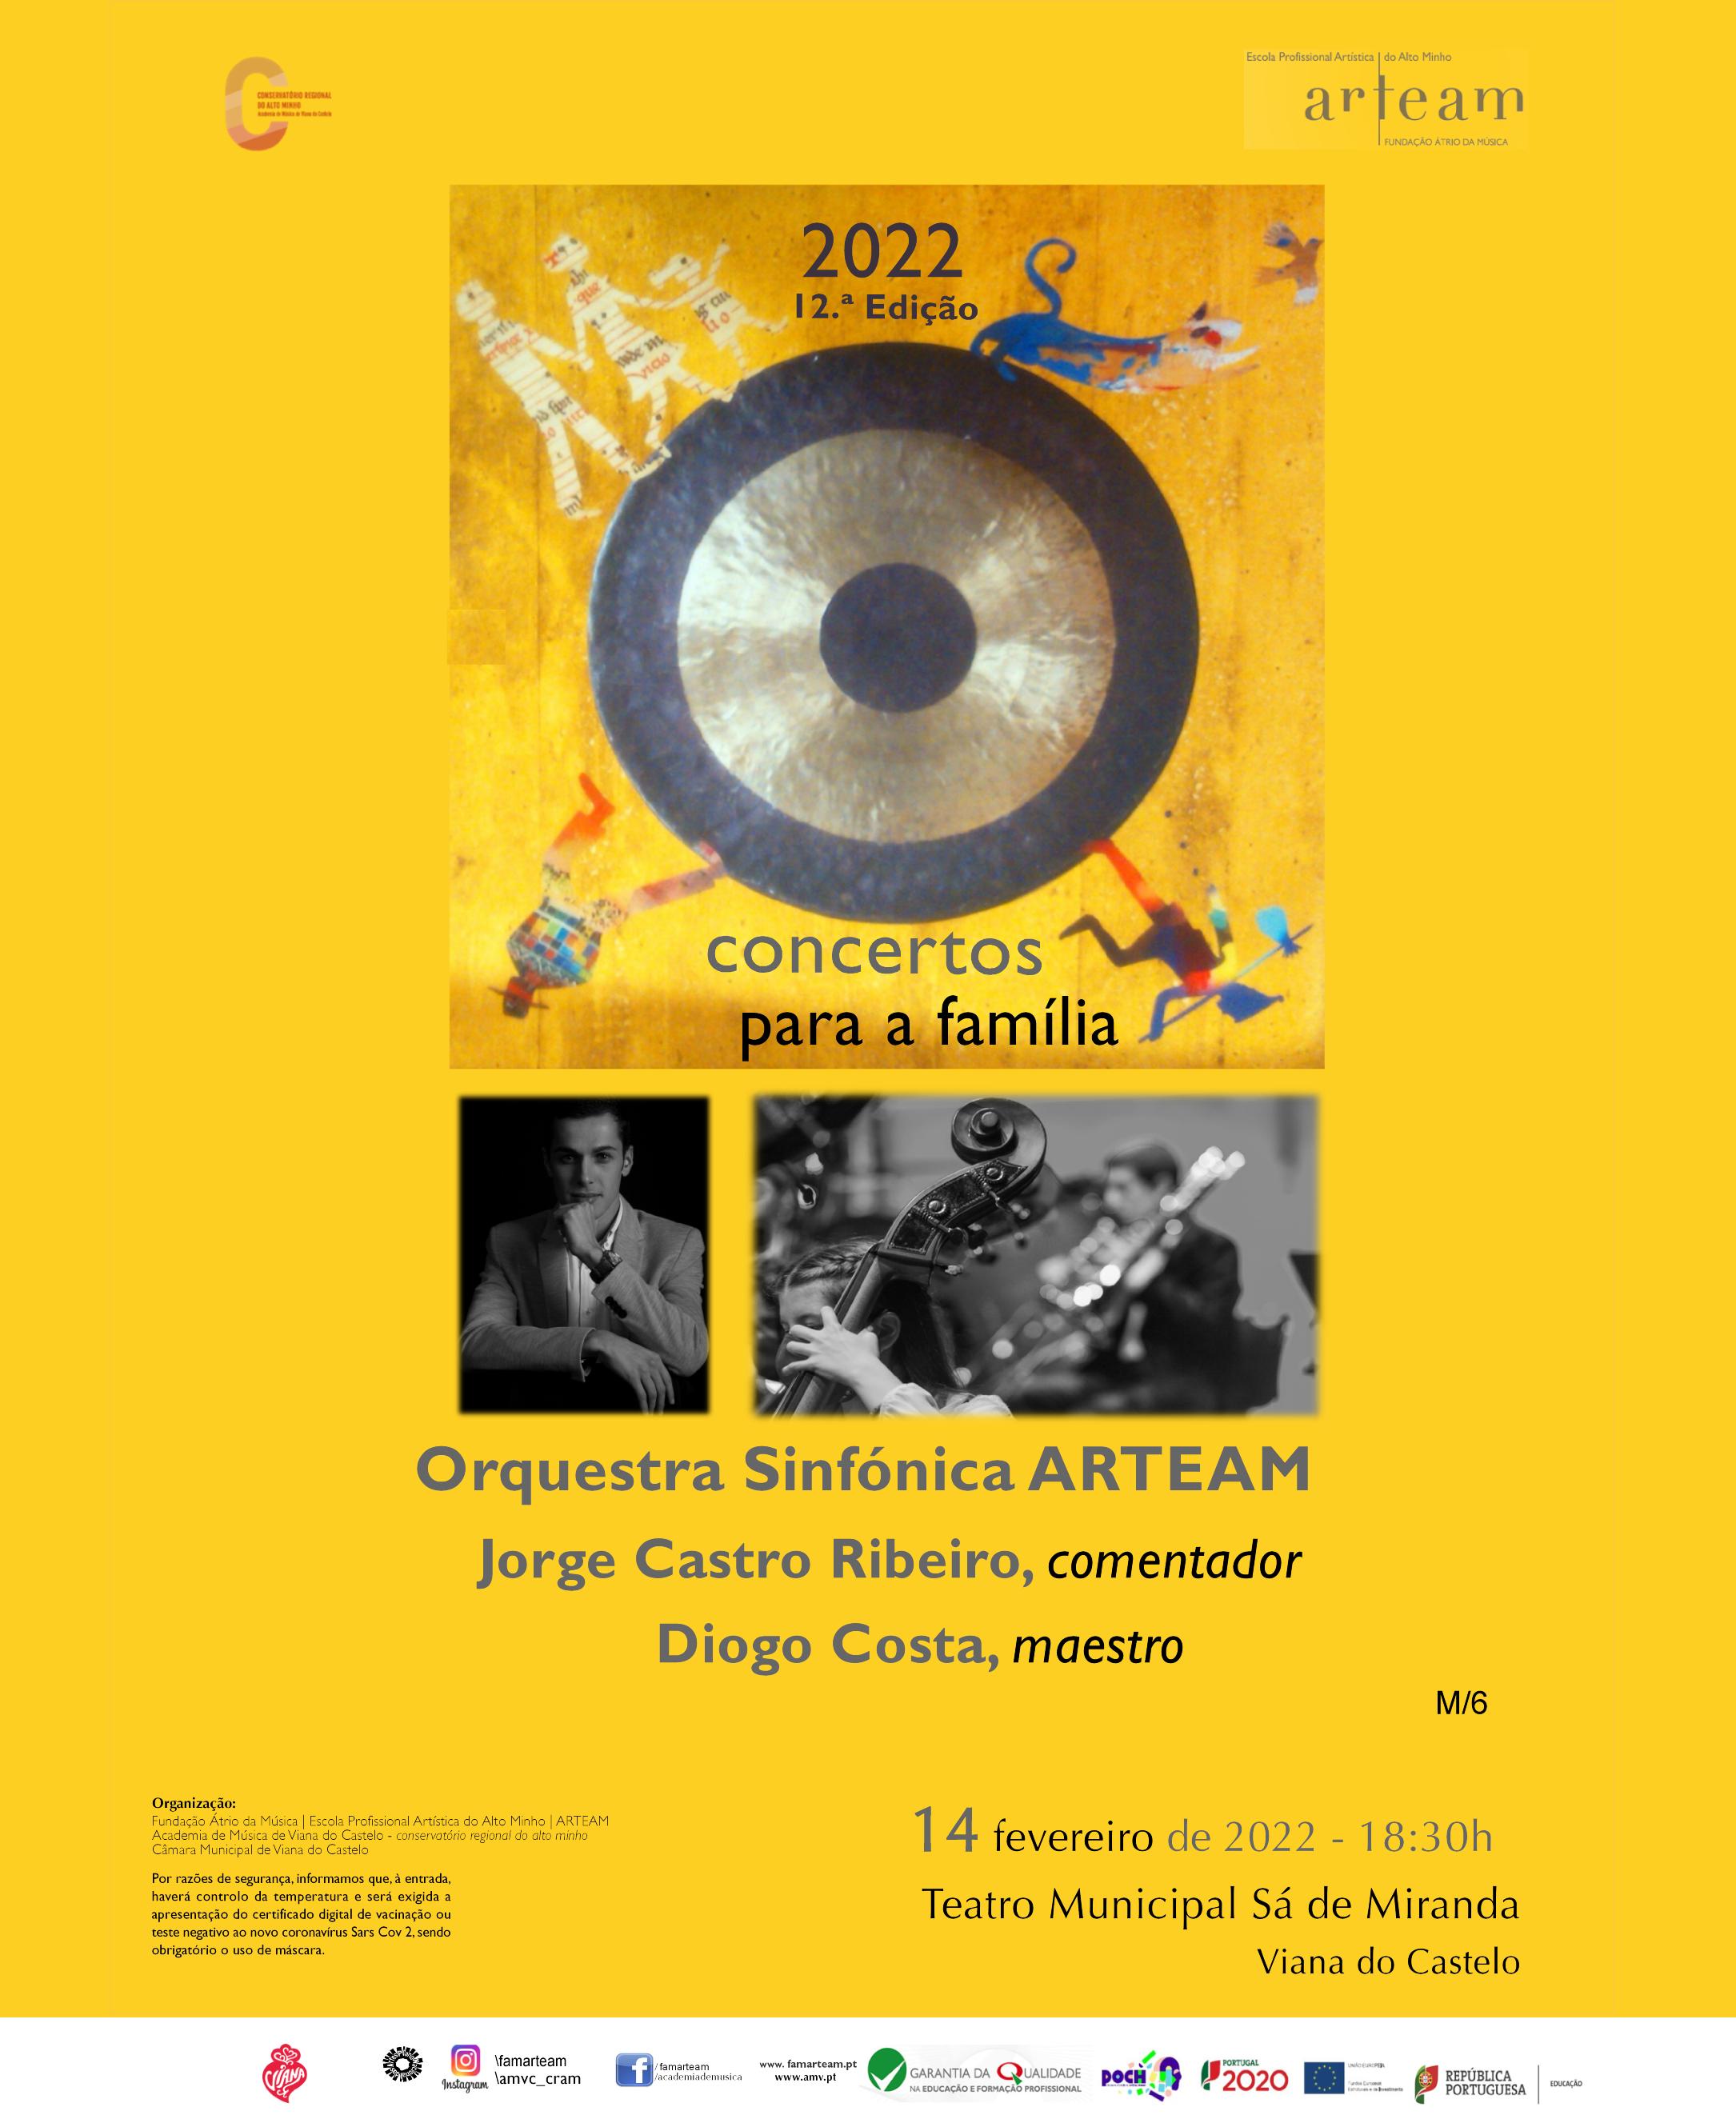 Concerto para a família no Teatro Municipal Sá de Miranda em Viana do Castelo